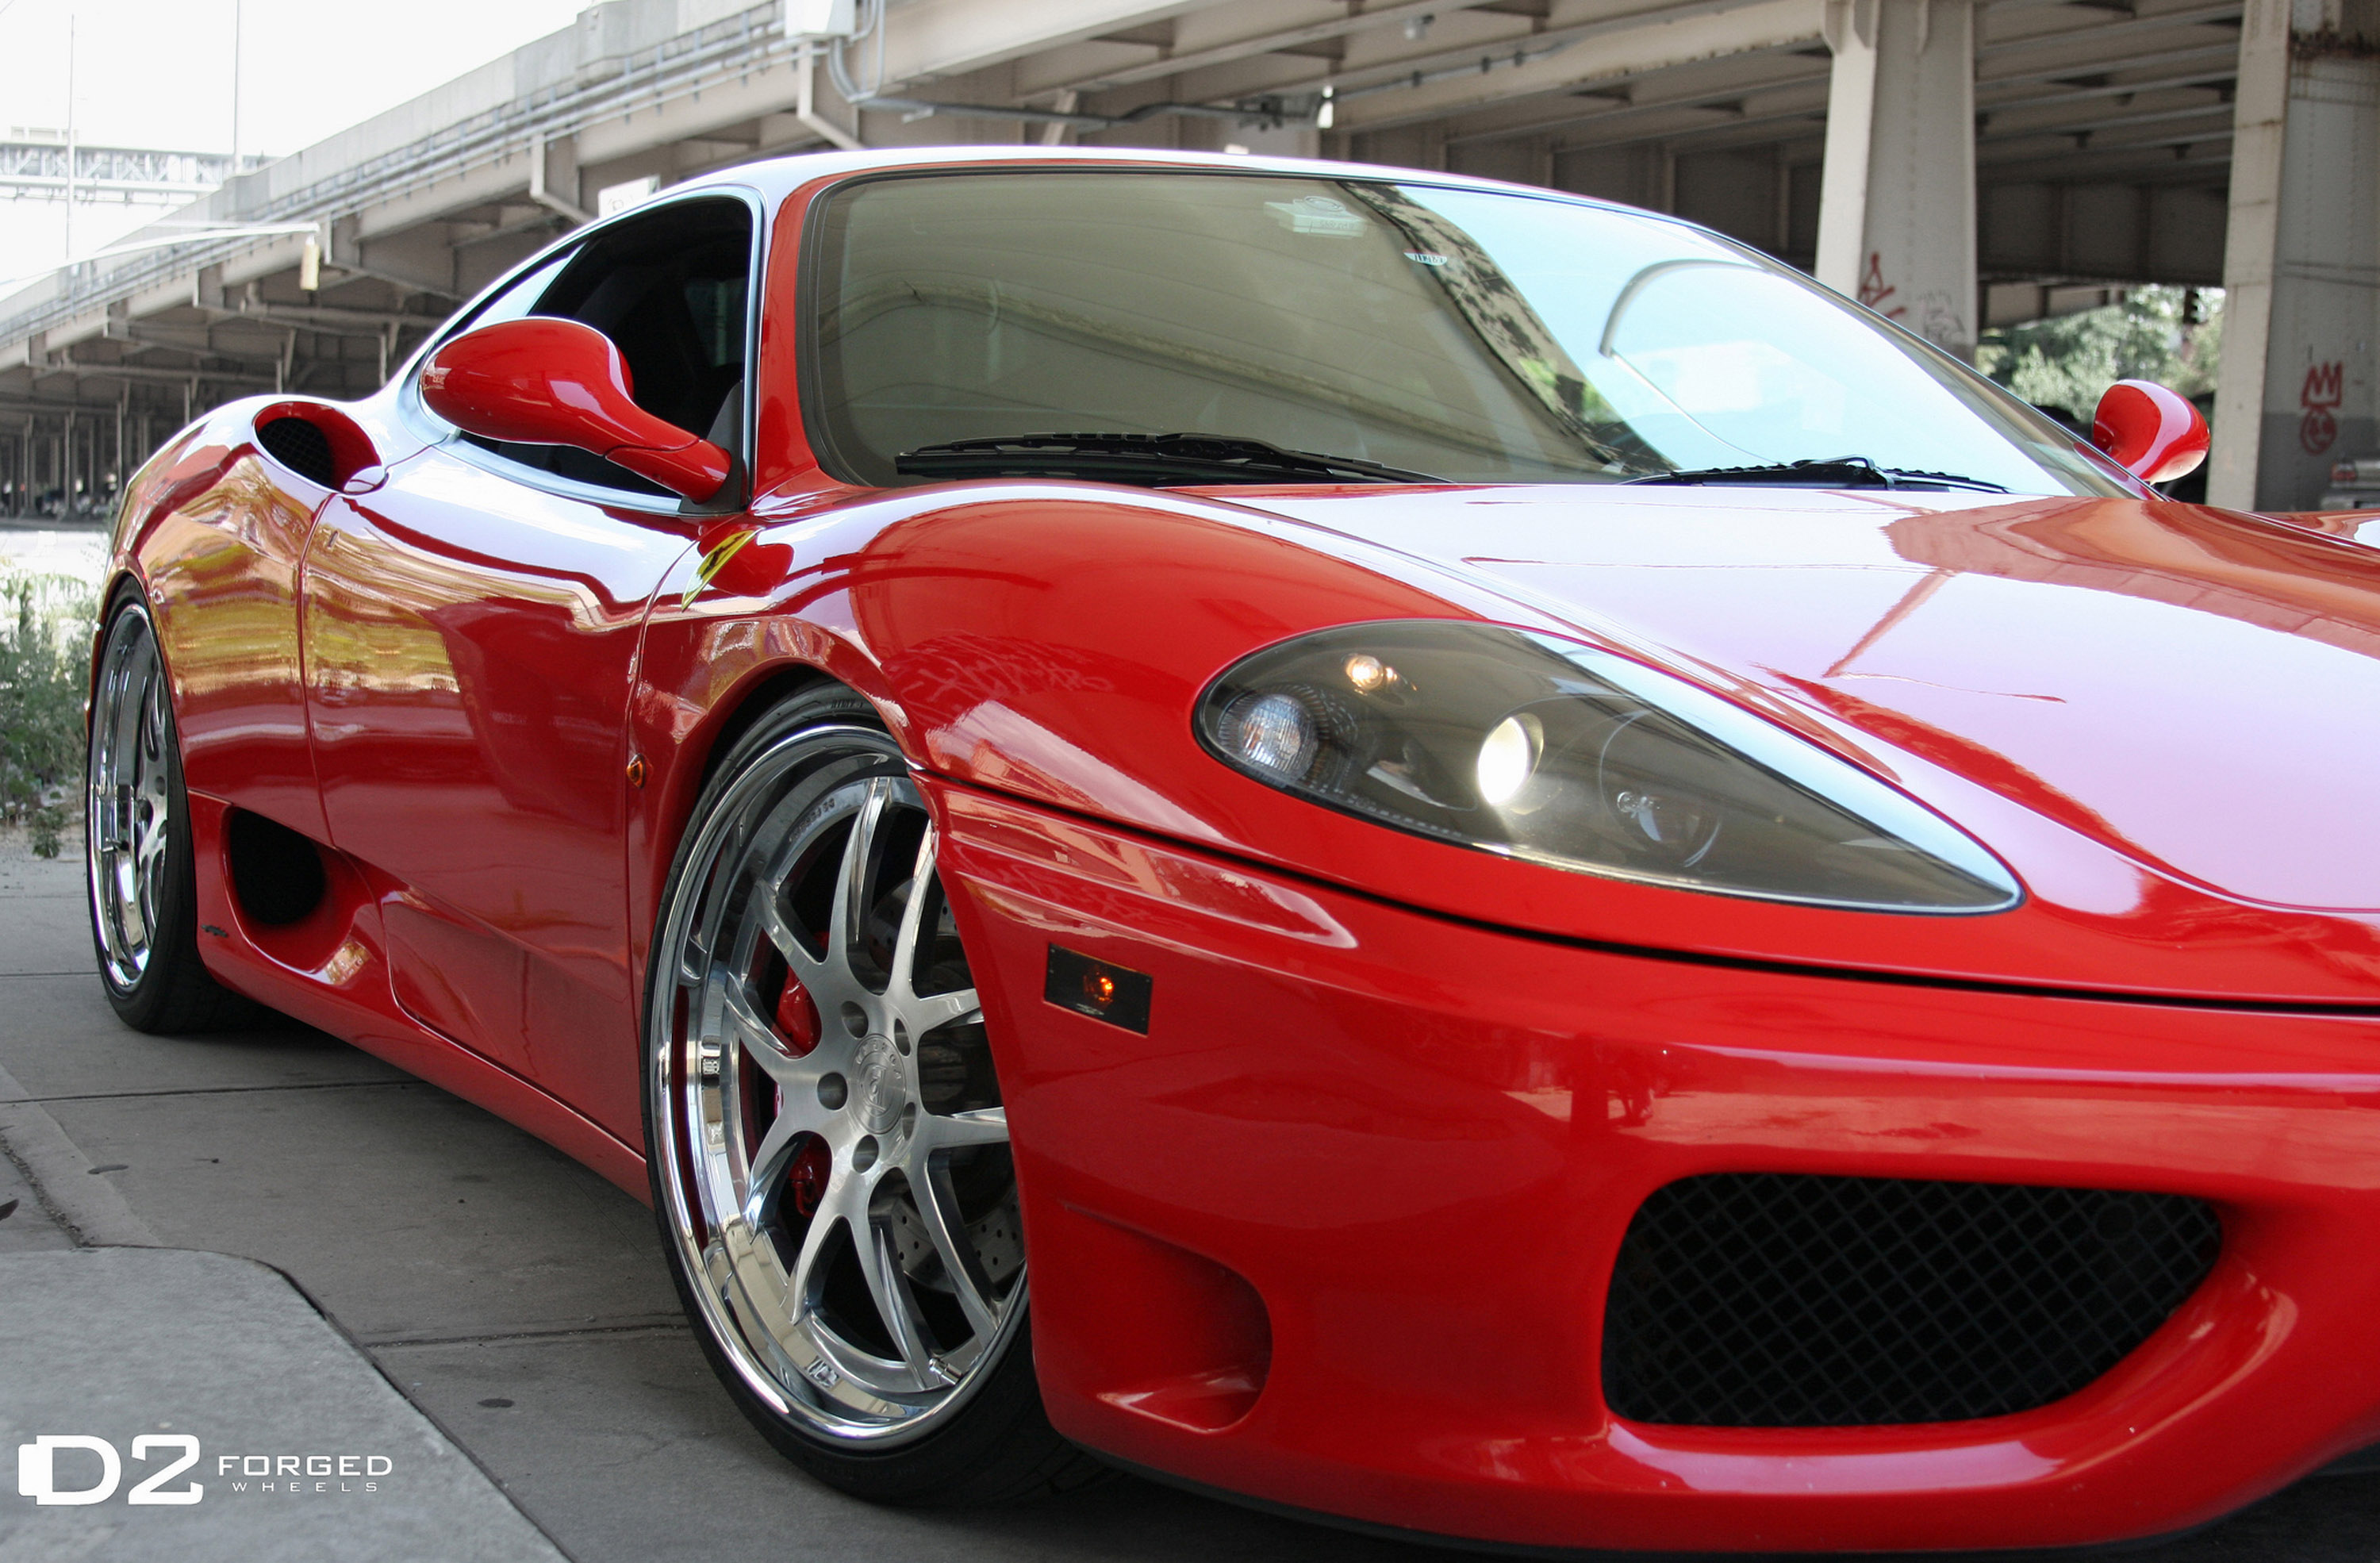 2012, D2forged, Ferrari, 360, Fms 08, Supercars, Supercar, Wheels, Wheel Wallpaper